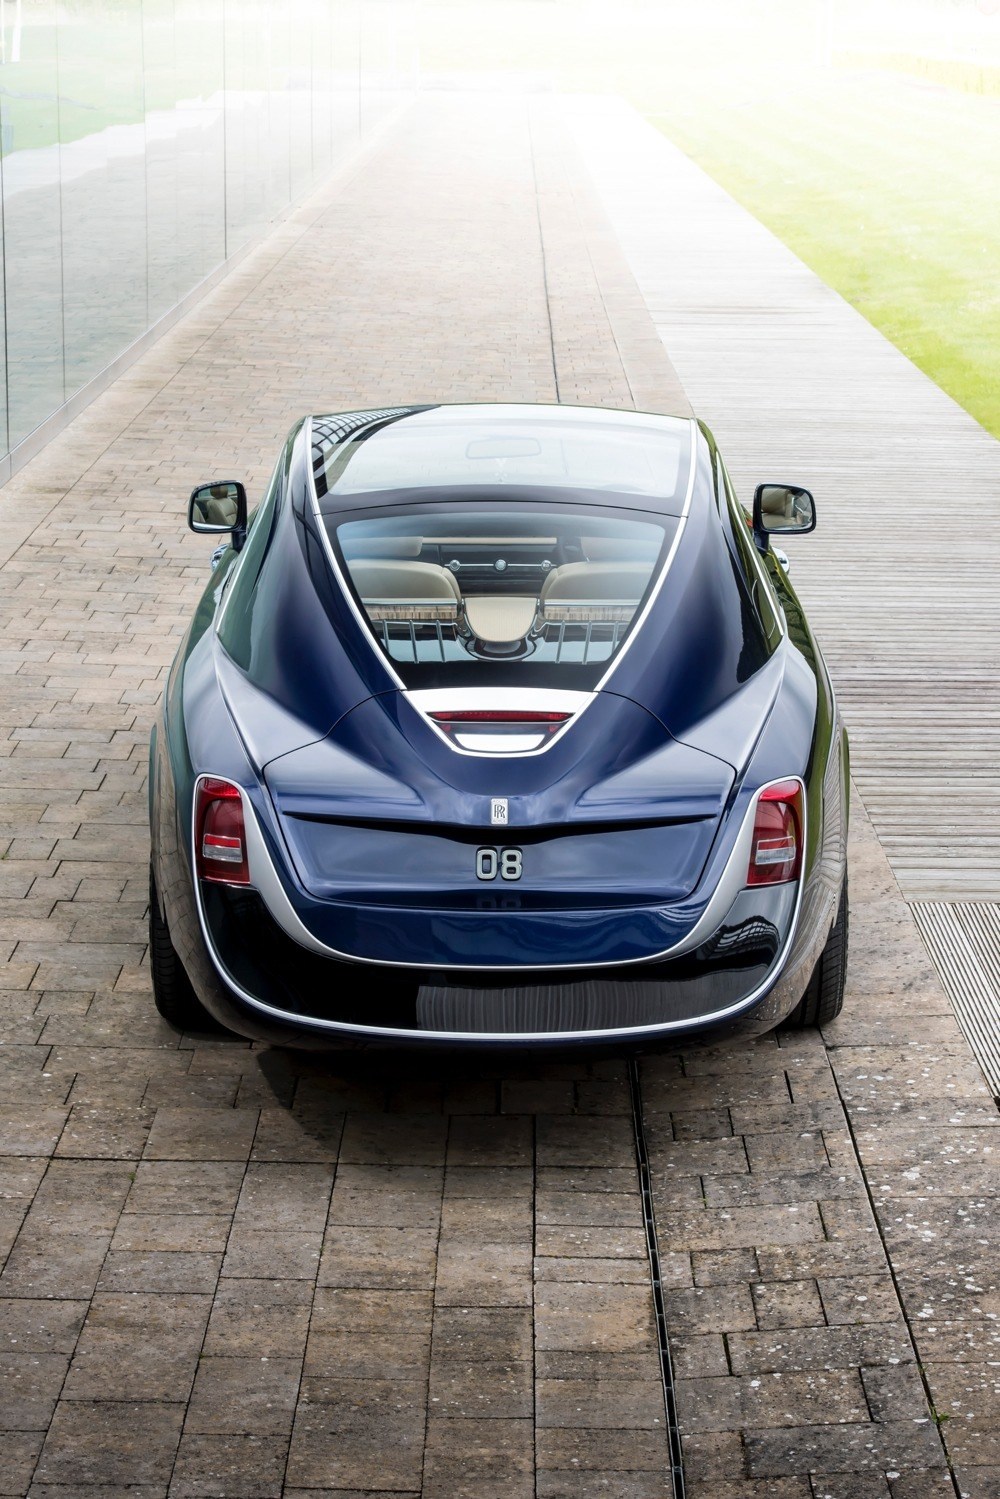 imagen 2 de Rolls-Royce Sweptail, probablemente, el coche más caro del mundo.